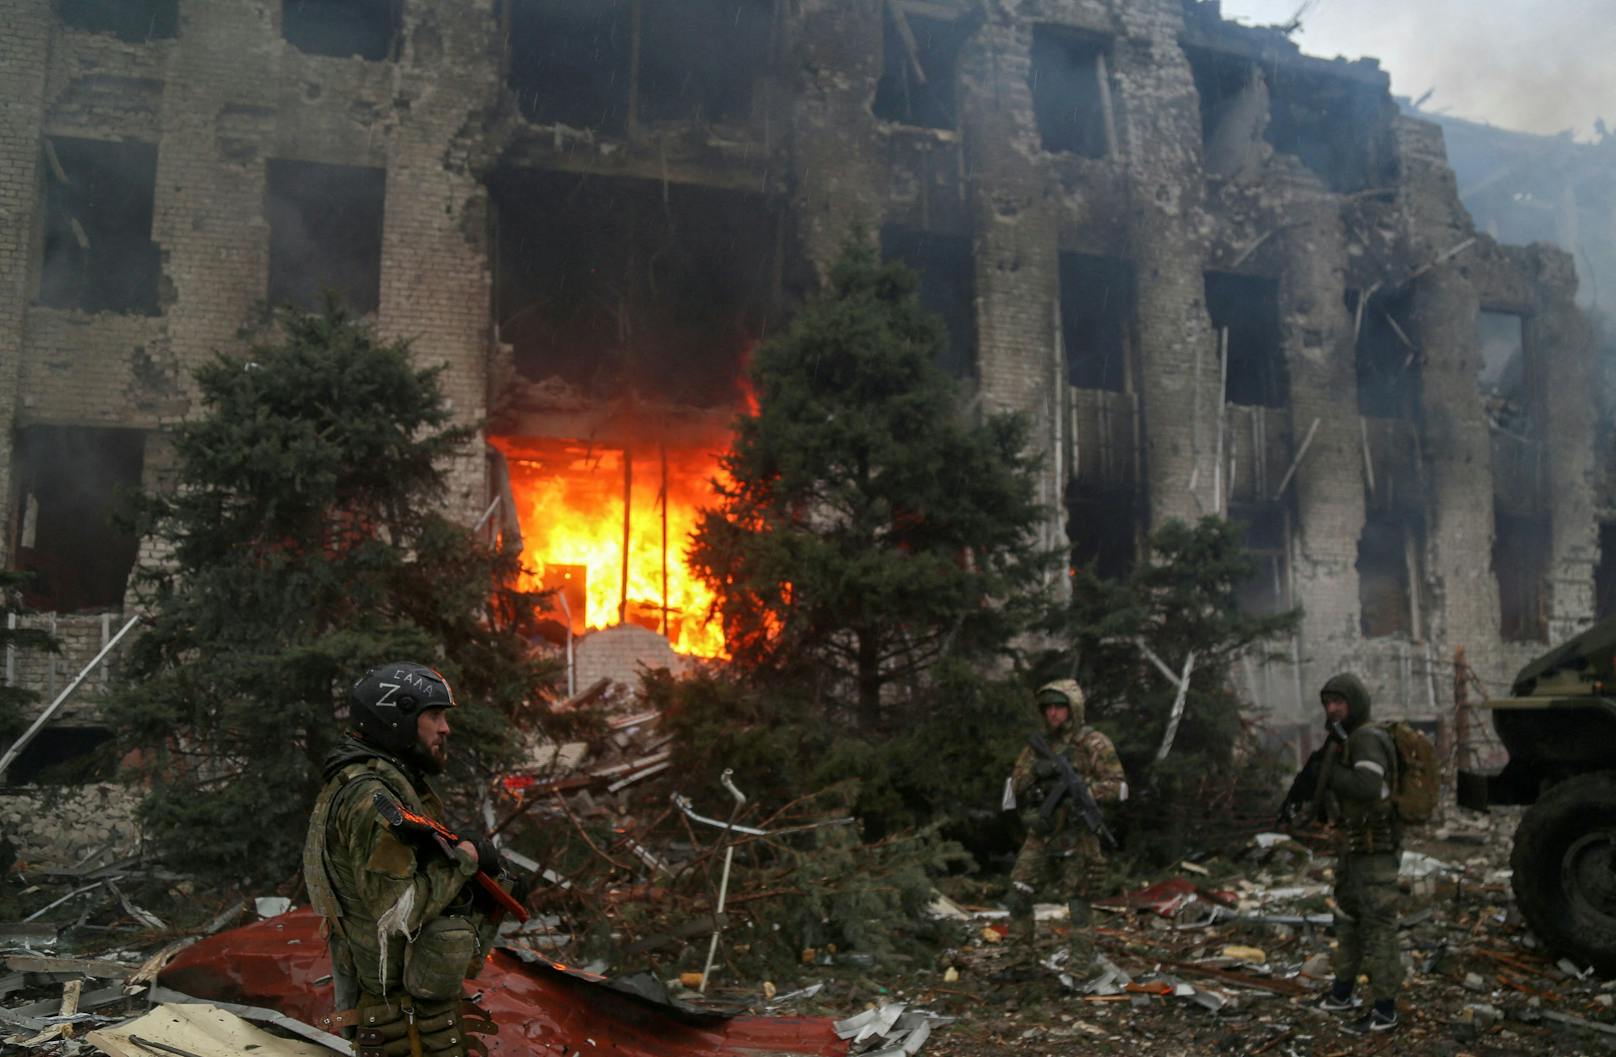 Fotos internationaler Nachrichtenagenturen bestätigen, dass sich die berüchtigten "Kadyrowzy" in Mariupol aufhalten.